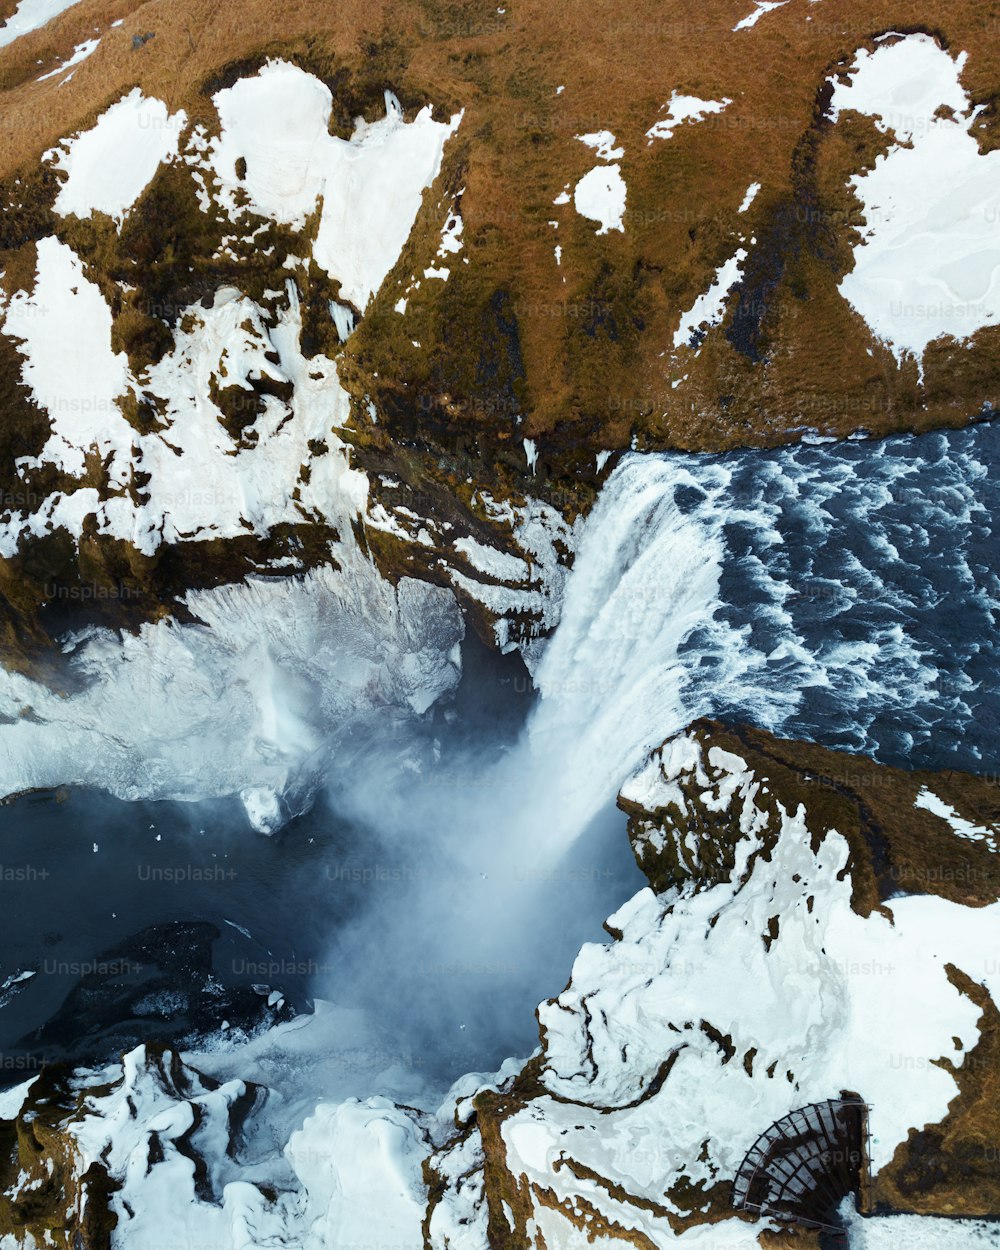 Una veduta aerea di una cascata circondata dalla neve